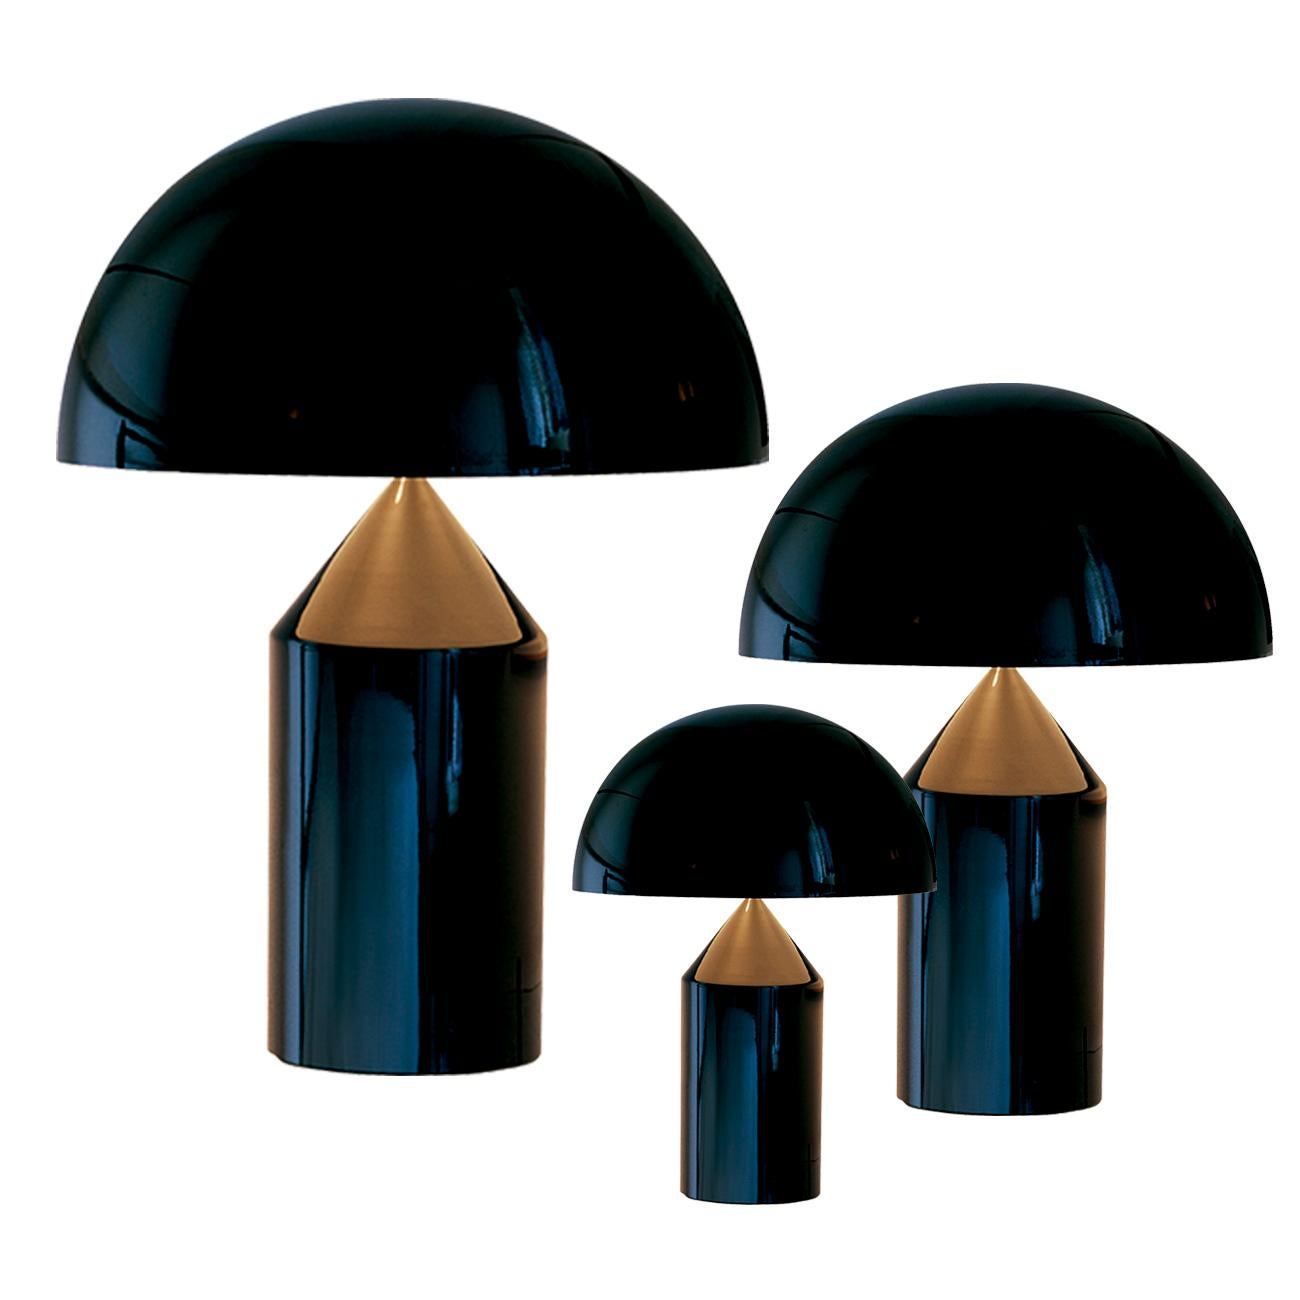 Lampe à poser conçue par Vico Magistretti en 1977
Fabriqué par Oluce, Italie.

Conçue en 1977 par Vico Magistretti, Atollo est devenue au fil des ans l'archétype de la lampe de table, remportant le Compasso d'Oro en 1979 et révolutionnant